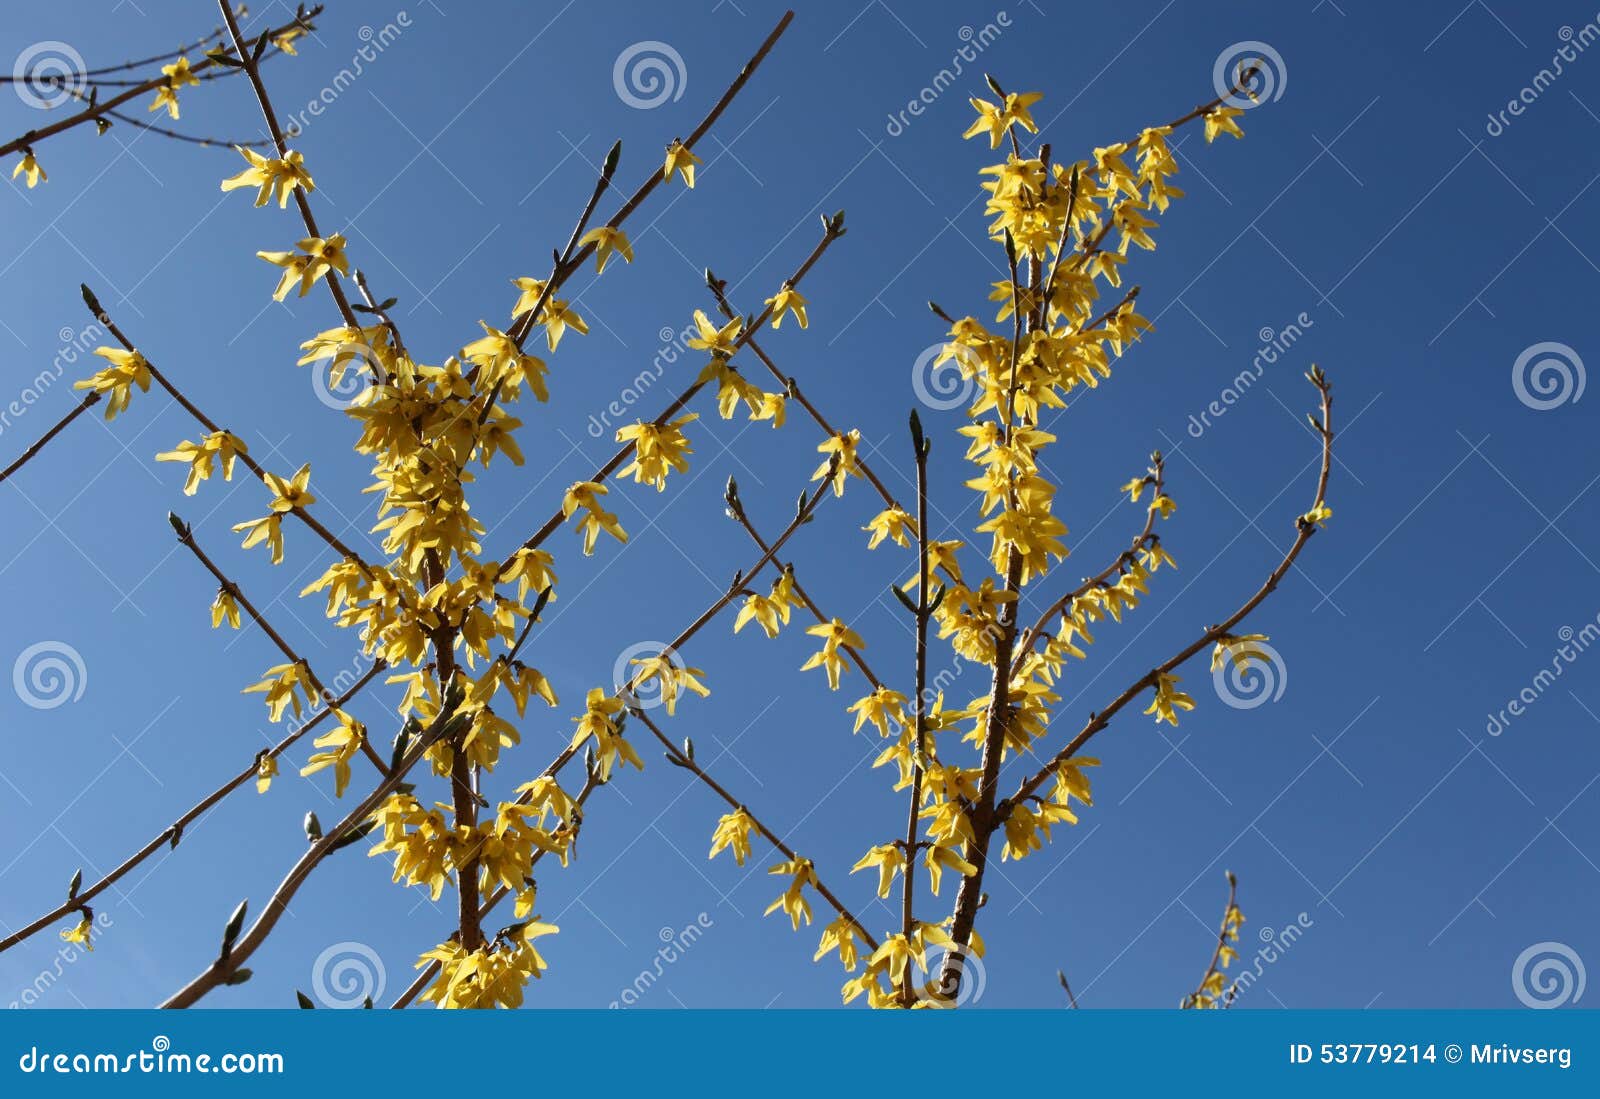 Κίτρινο forthysia λουλουδιών. Κλάδος των φωτεινών κίτρινων λουλουδιών forthysia σε ένα μπλε υπόβαθρο